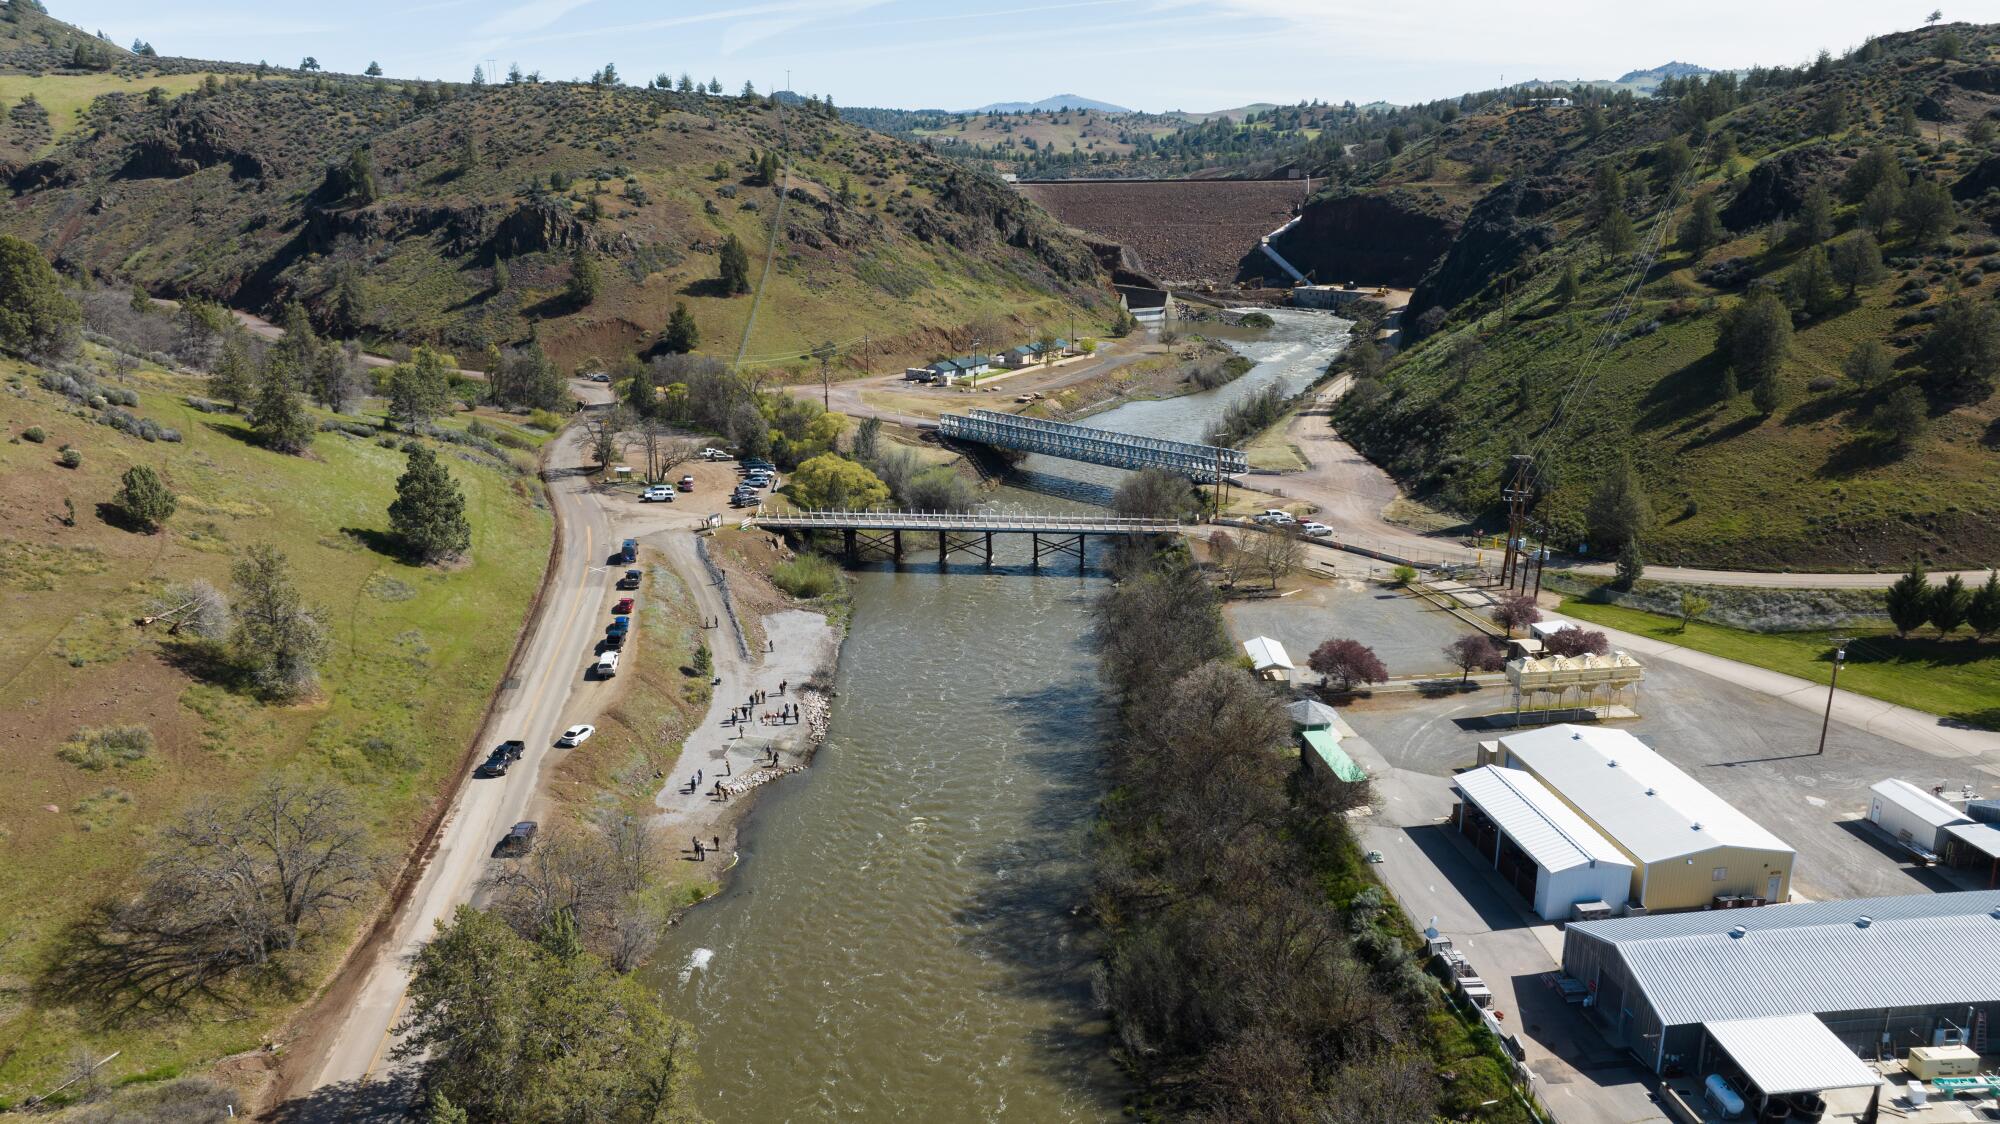 Eine Luftaufnahme des Klamath River stromabwärts des Iron Gate Dam, wo in Brutstätten gezüchtete Lachse freigelassen wurden.